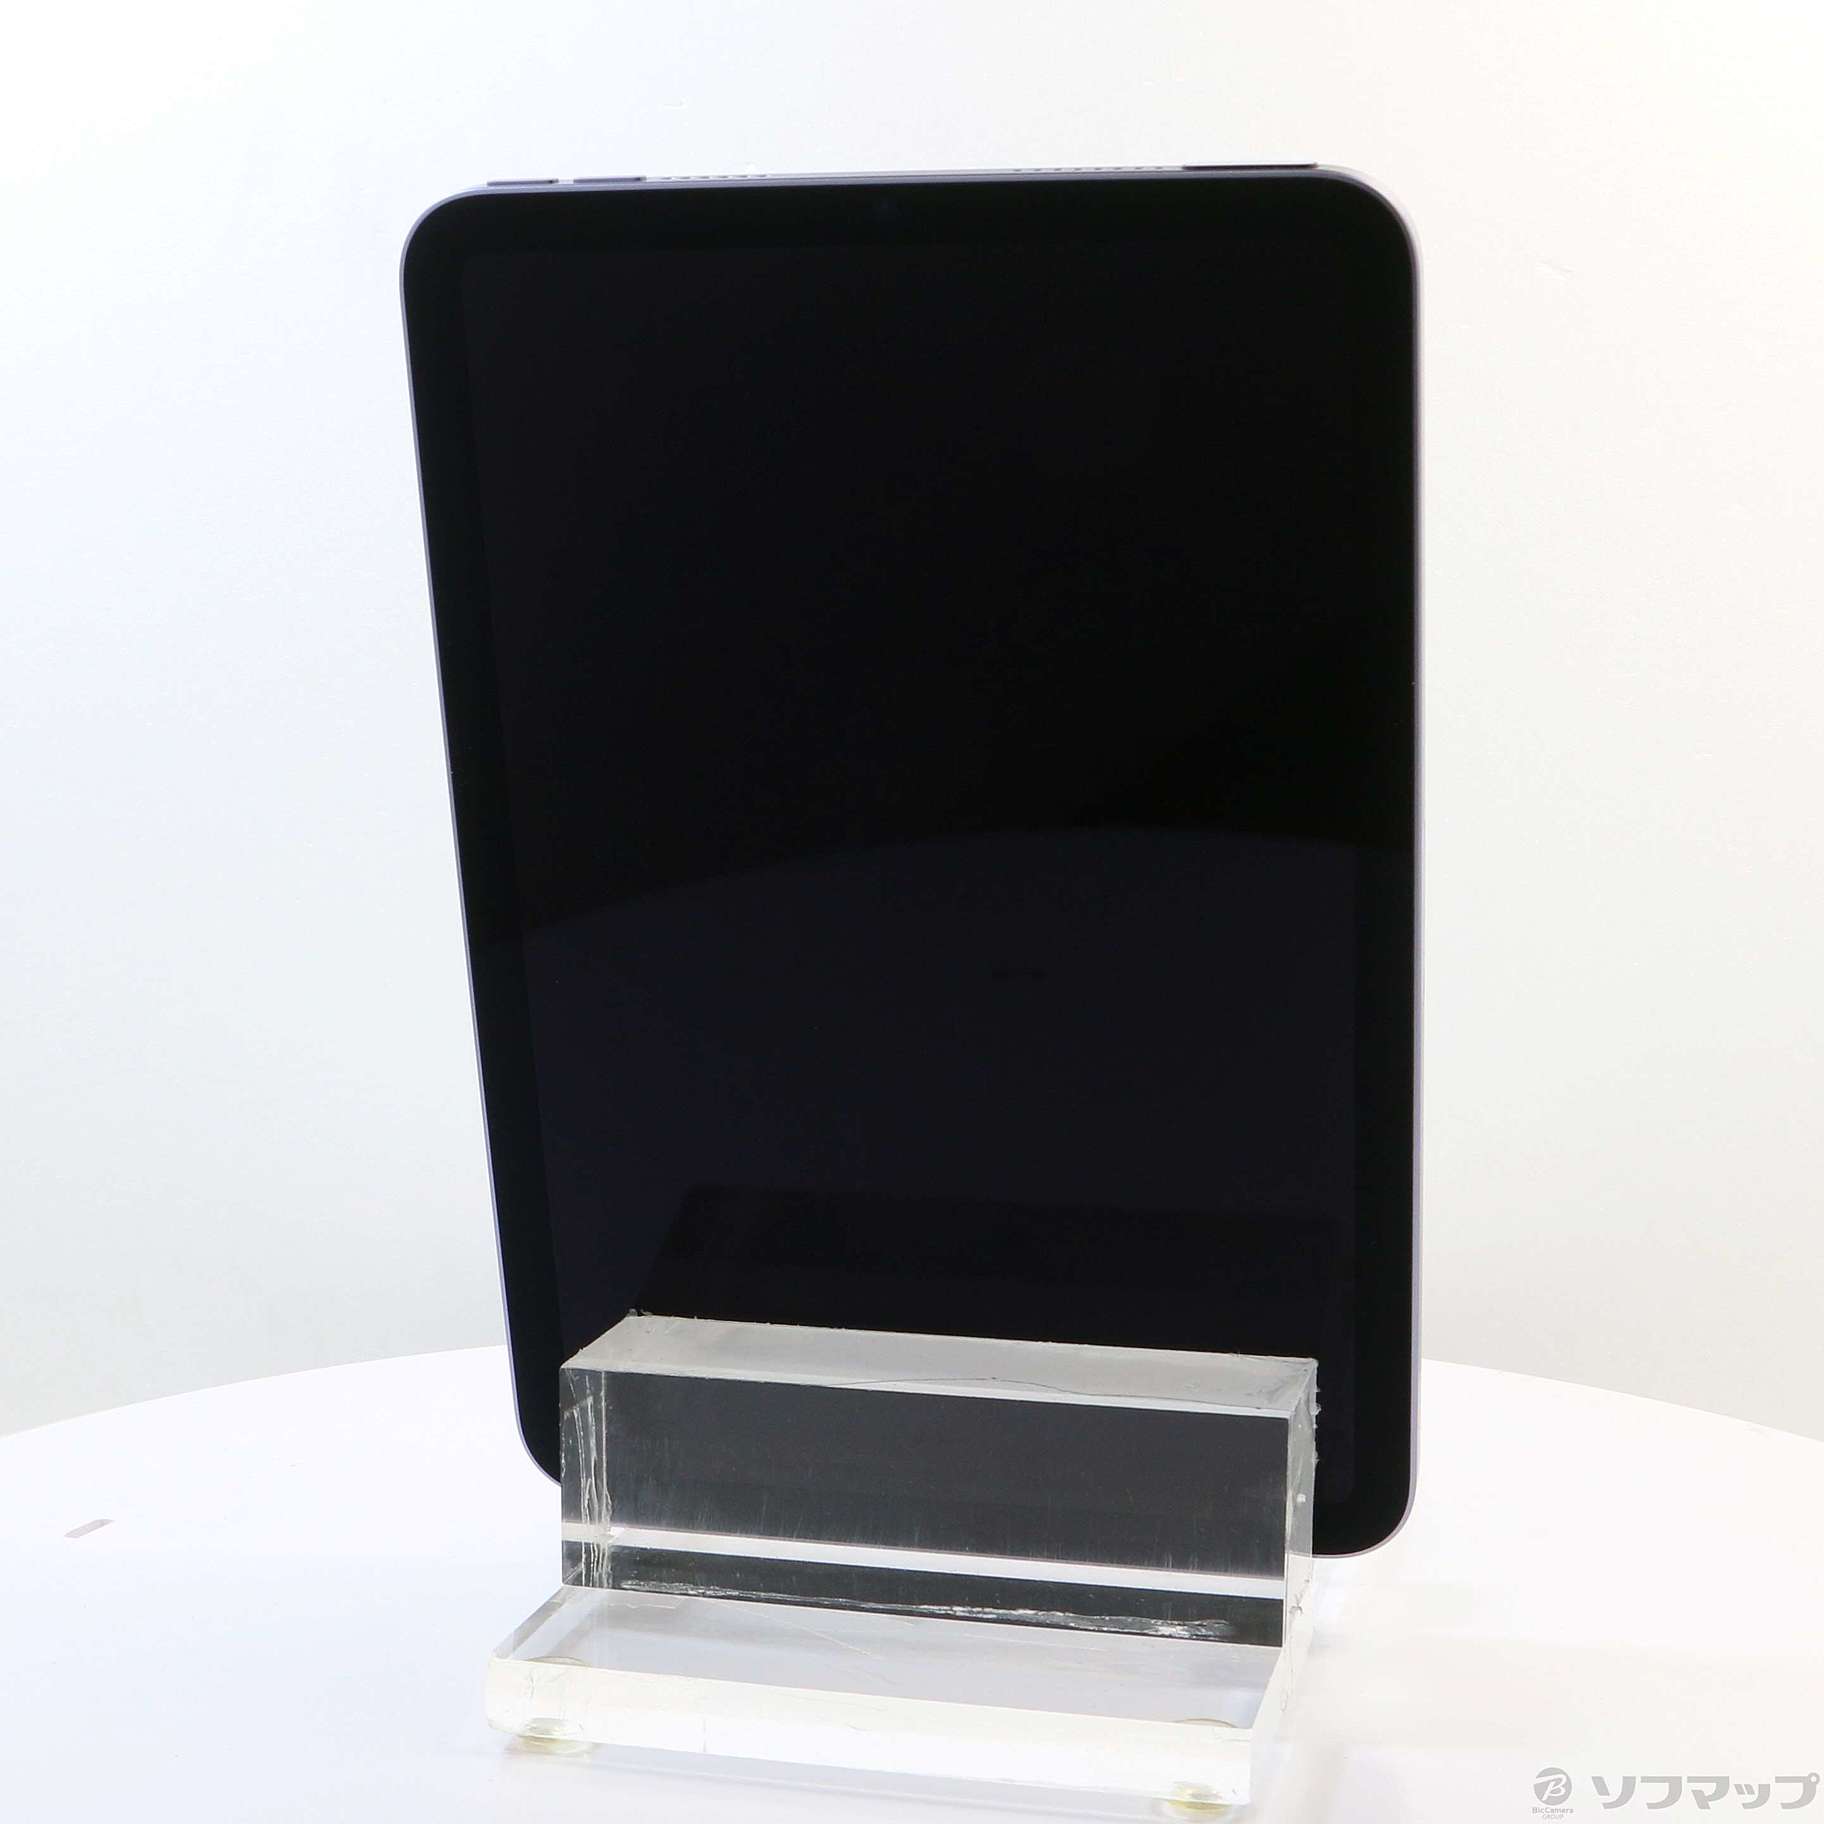 【売り直営】ipad mini664GBWi-FiモデルパープルMK7R3J/A iPad本体